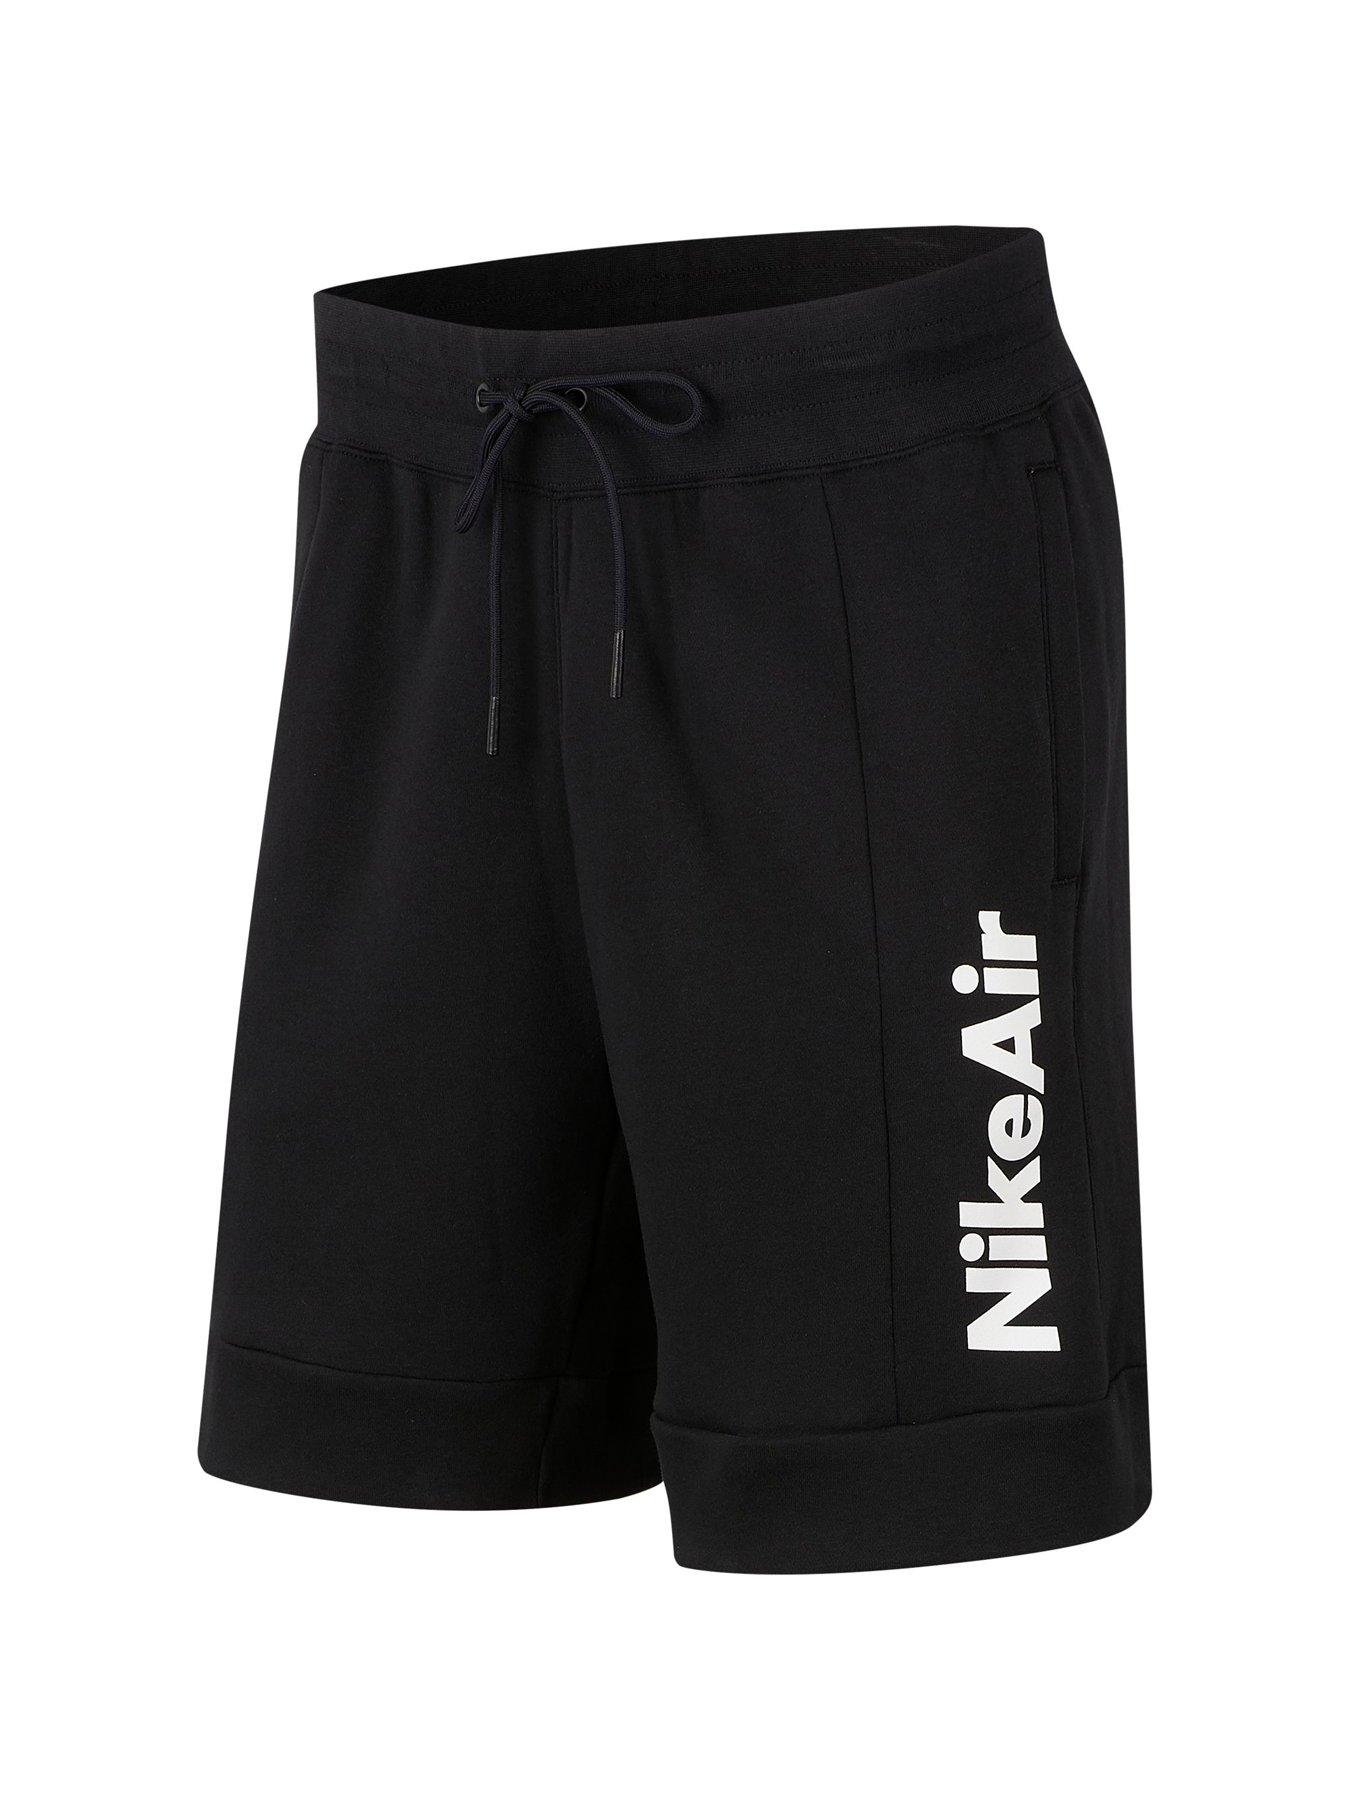 nike air shorts black